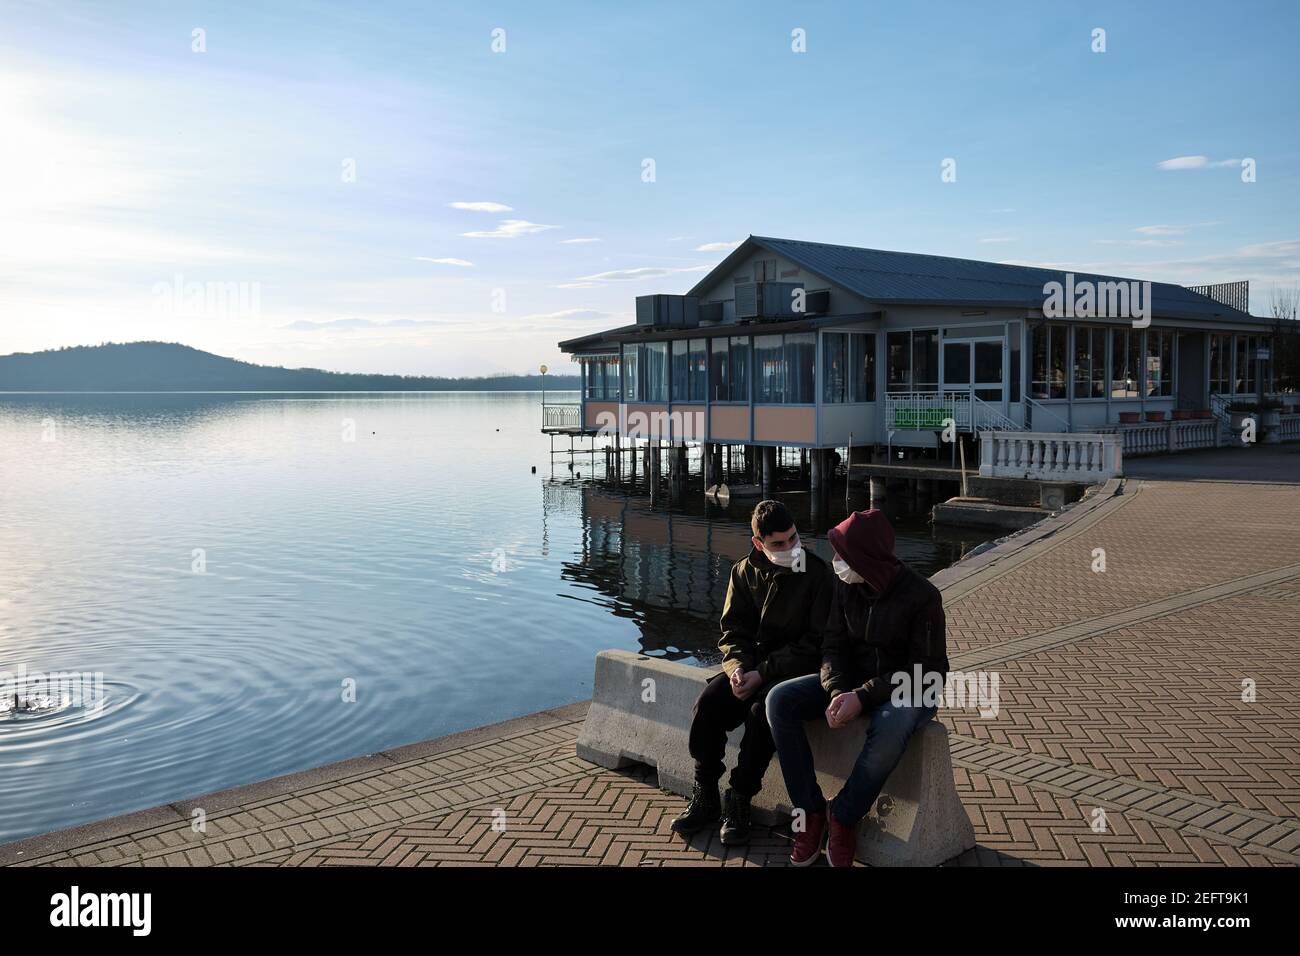 due amici chiacchierano davanti a uno chalet sul lago con la maschera anti-covid19 Foto Stock